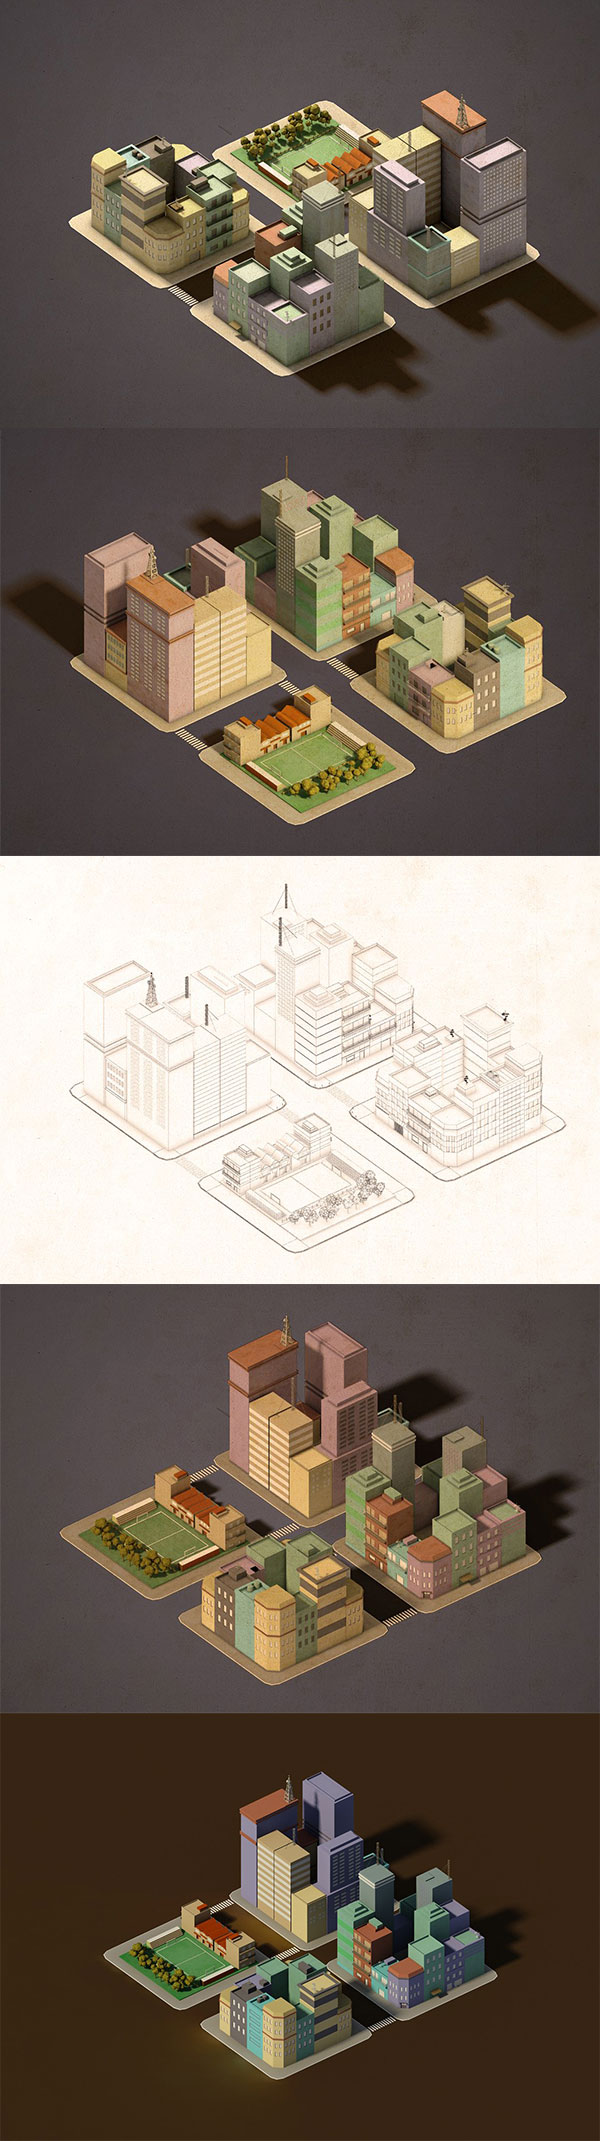 تصميم منازل ثلاثي الابعاد قابل للتعديل جرافيكس العرب Indian